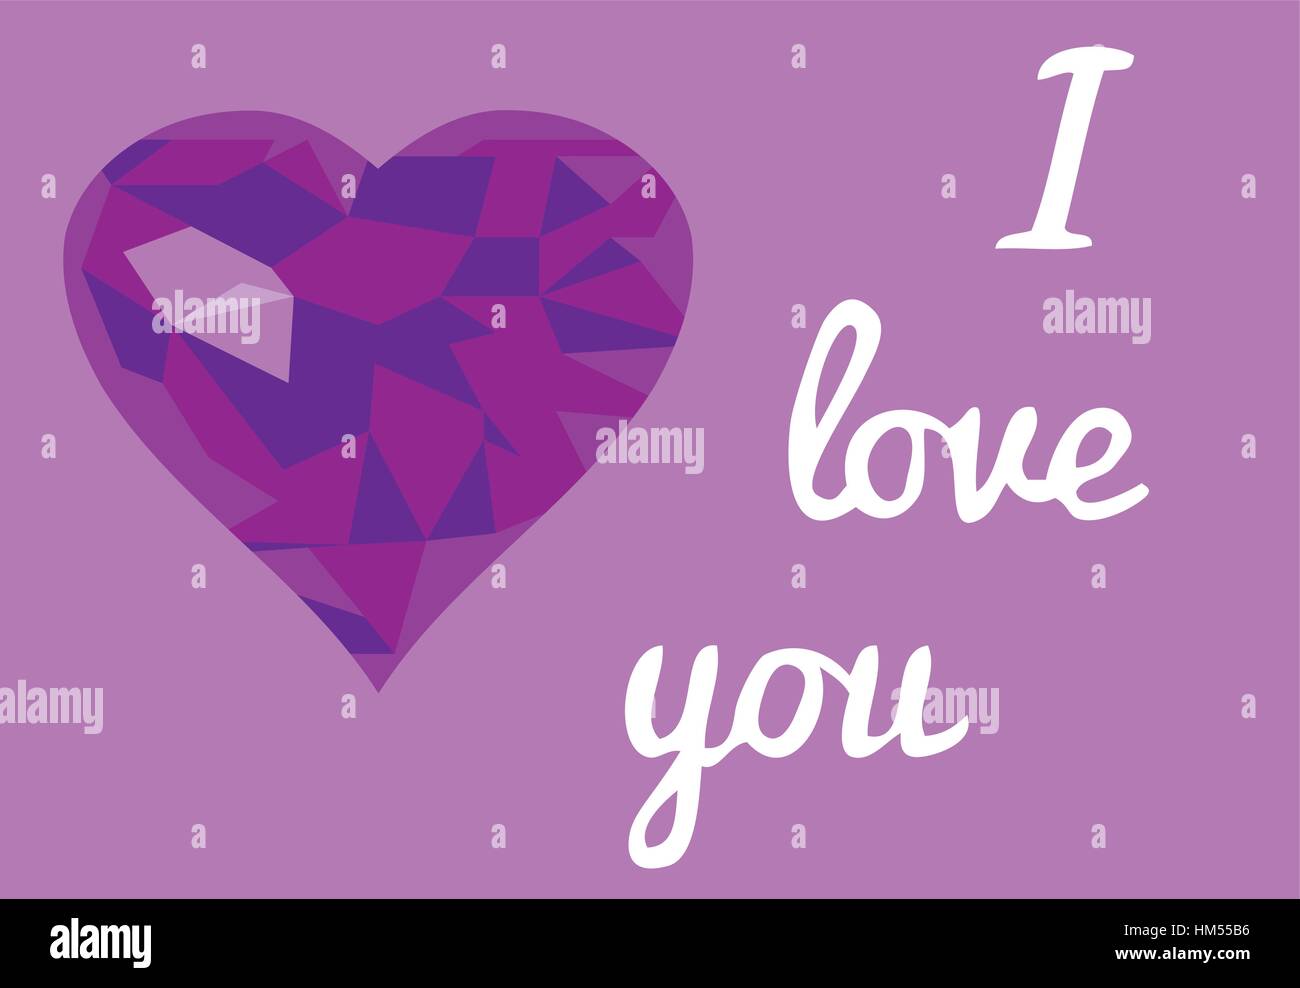 Illustrazione vettoriale di valentine card con mosaico viola cuore e amore è il testo Illustrazione Vettoriale